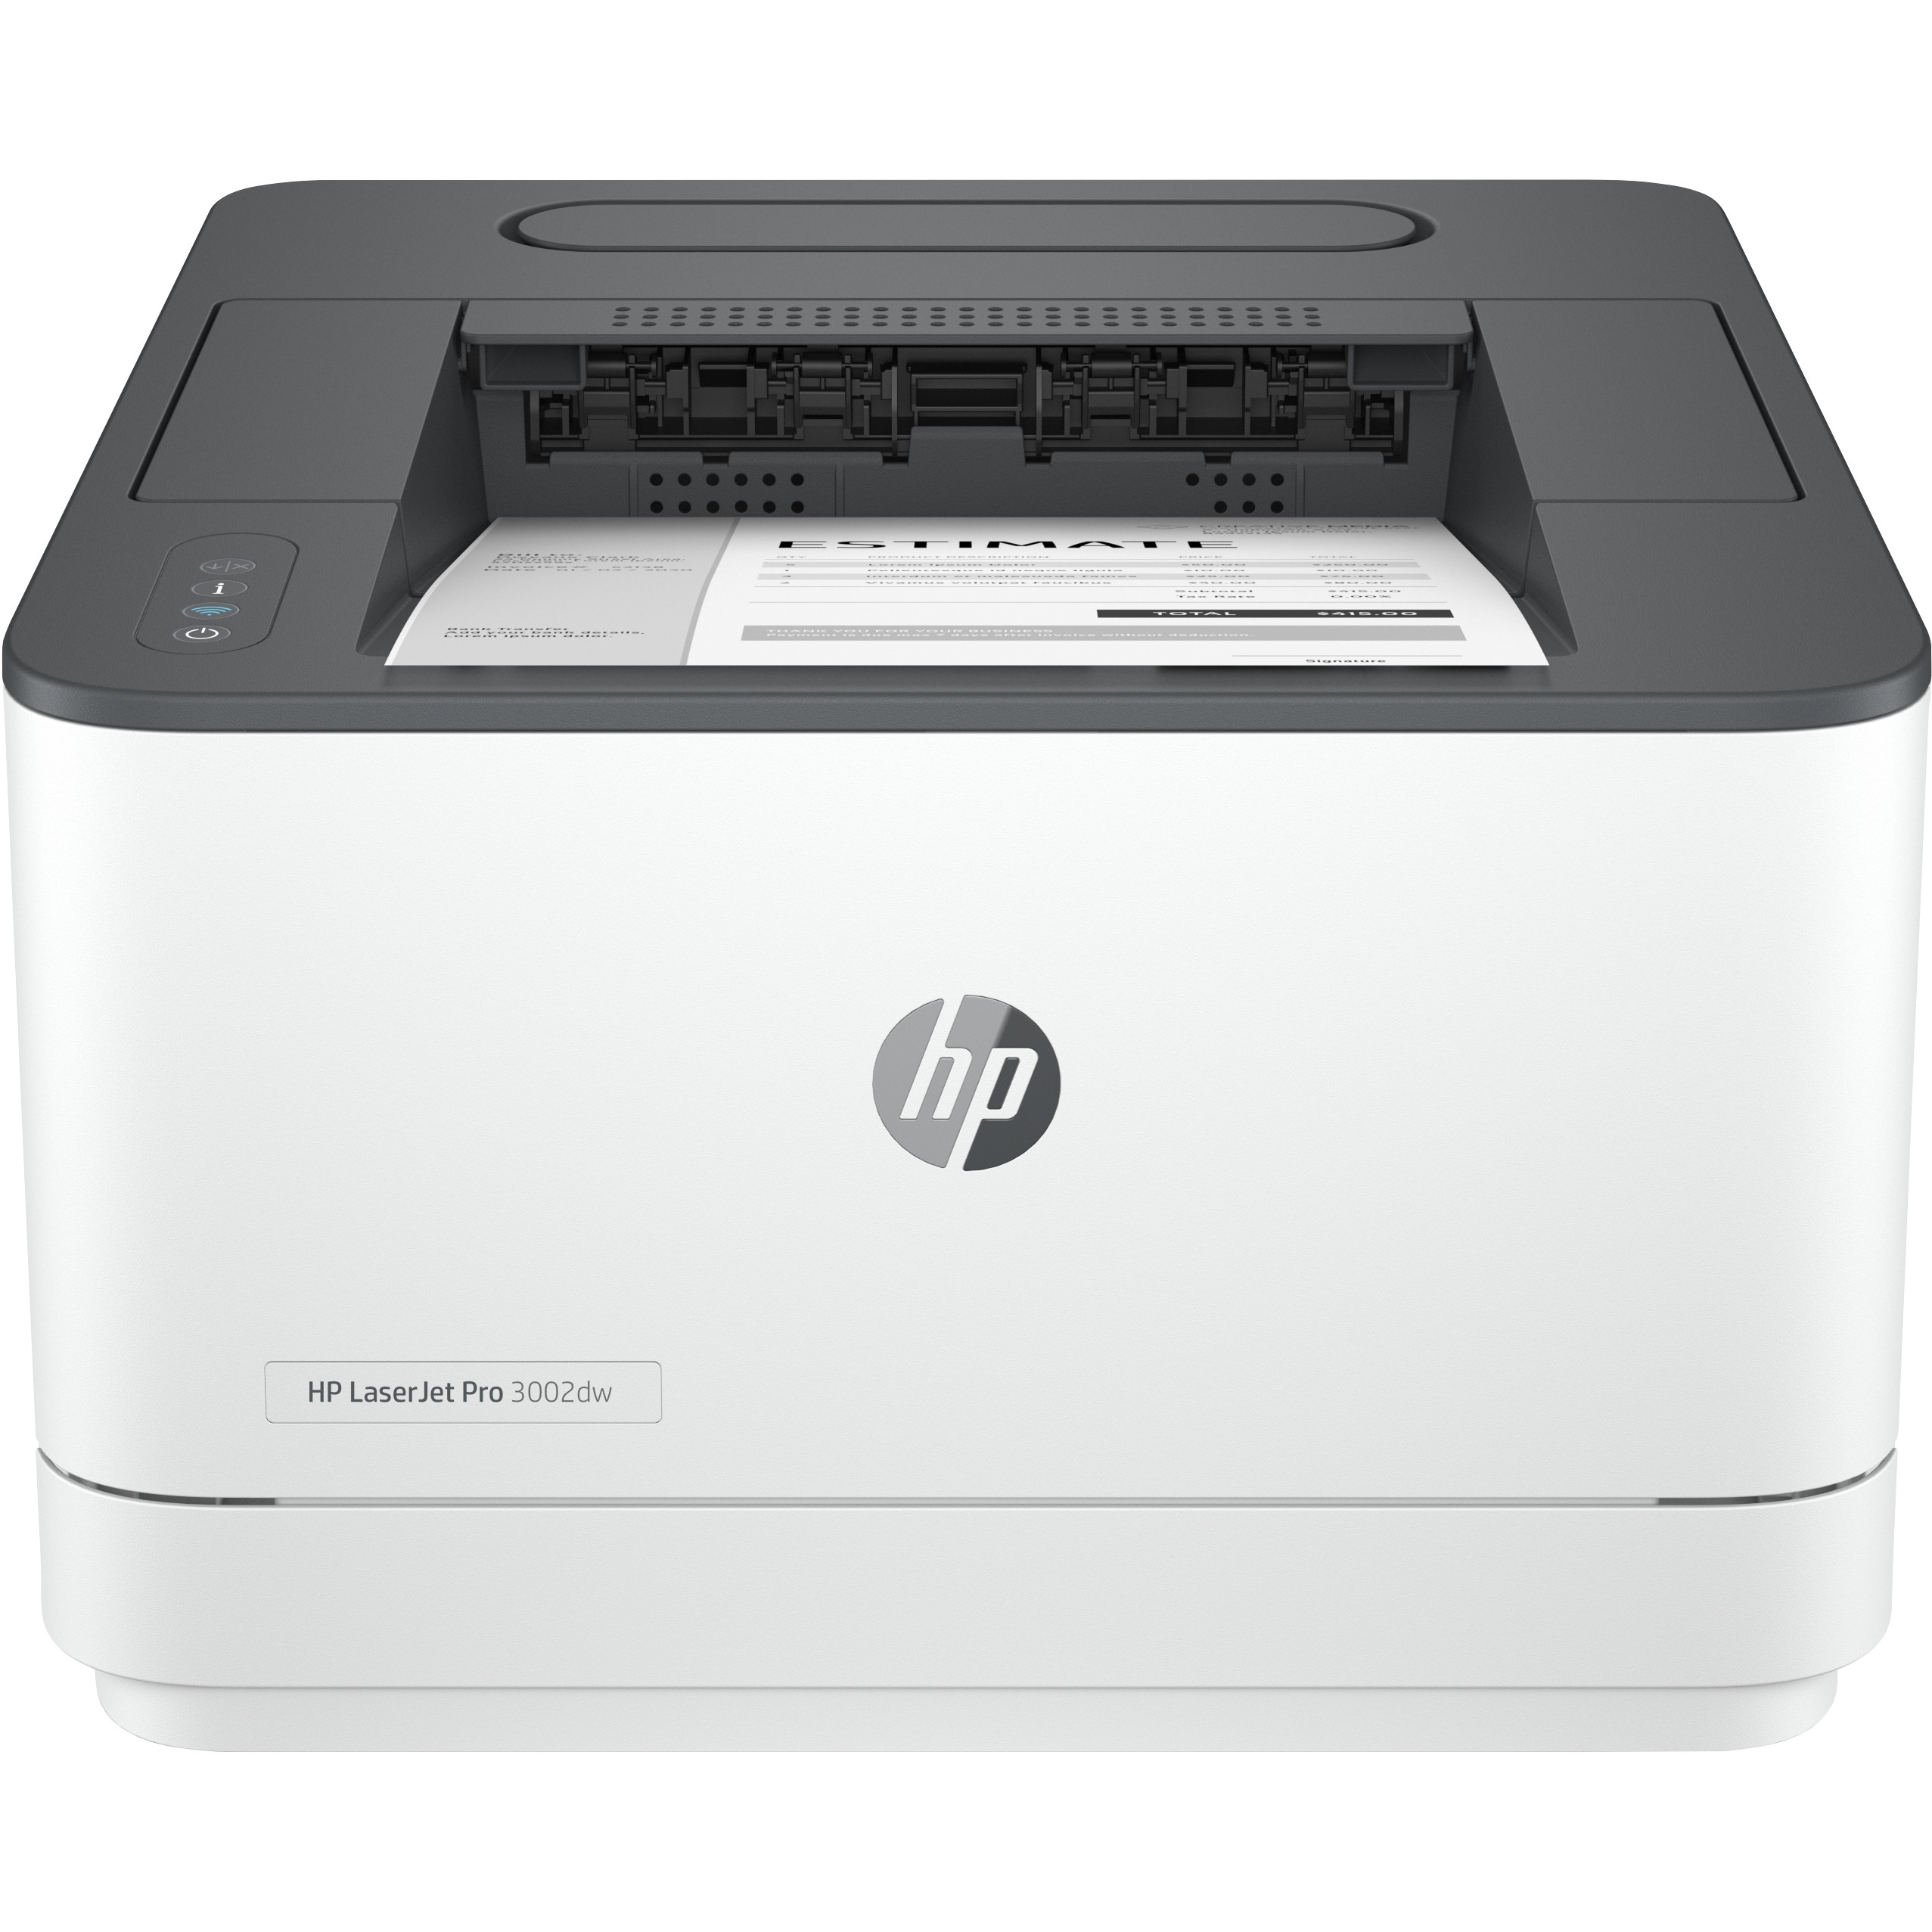 HP LaserJet Pro 3002dw S/W-Laserdrucker A4 33S./Min. A4 WLAN Duplex